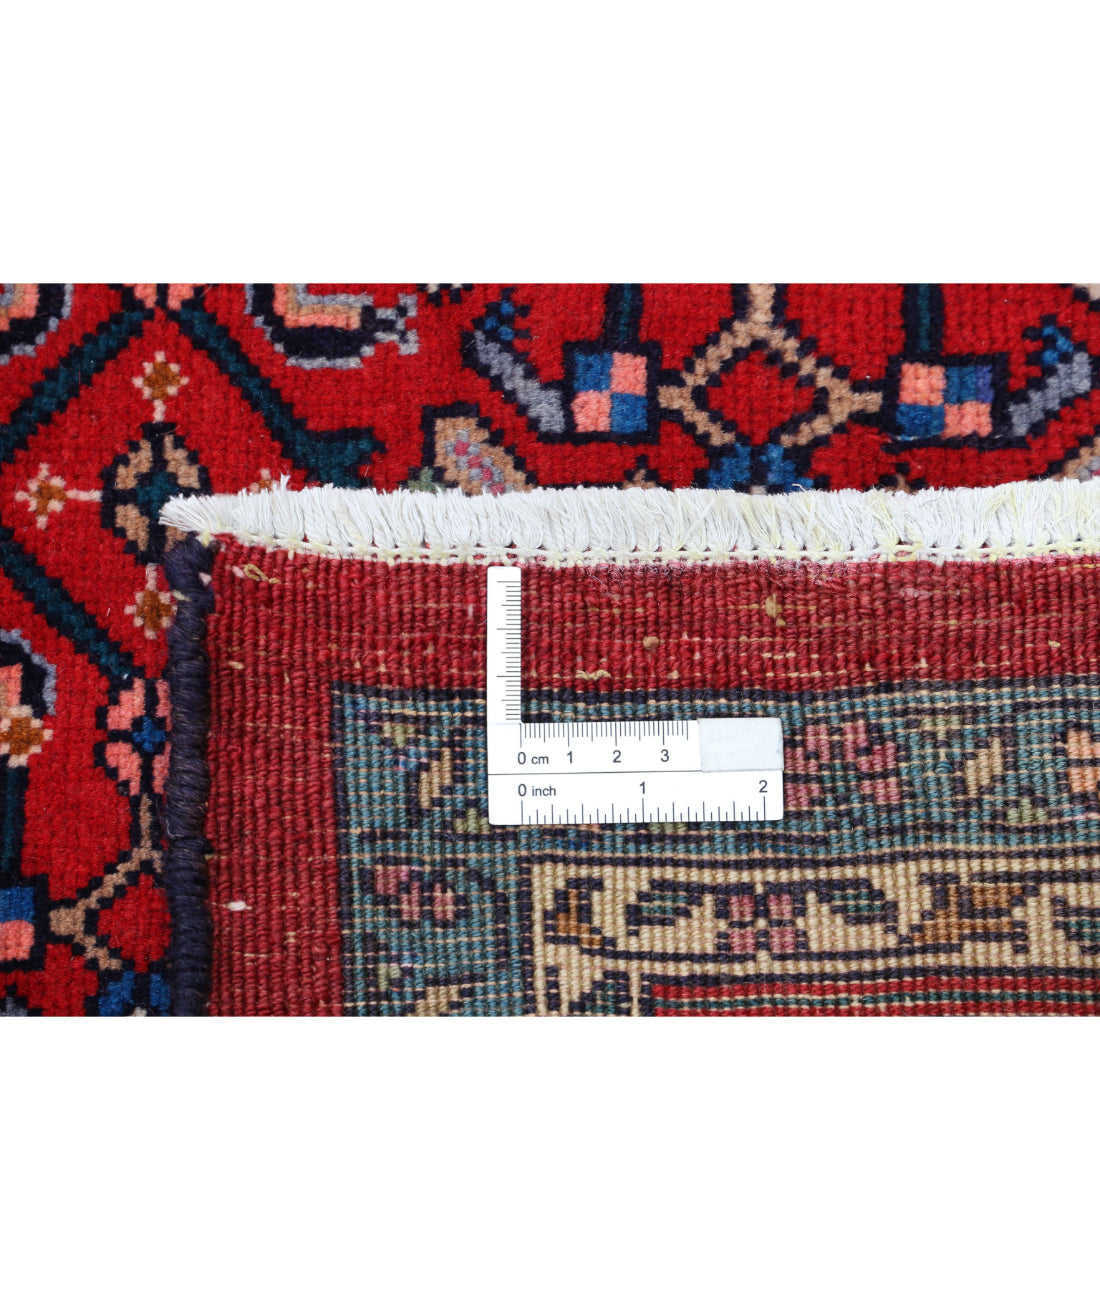 Bijar 6'5'' X 9'9'' Hand-Knotted Wool Rug 6'5'' x 9'9'' (193 X 293) / Red / Blue